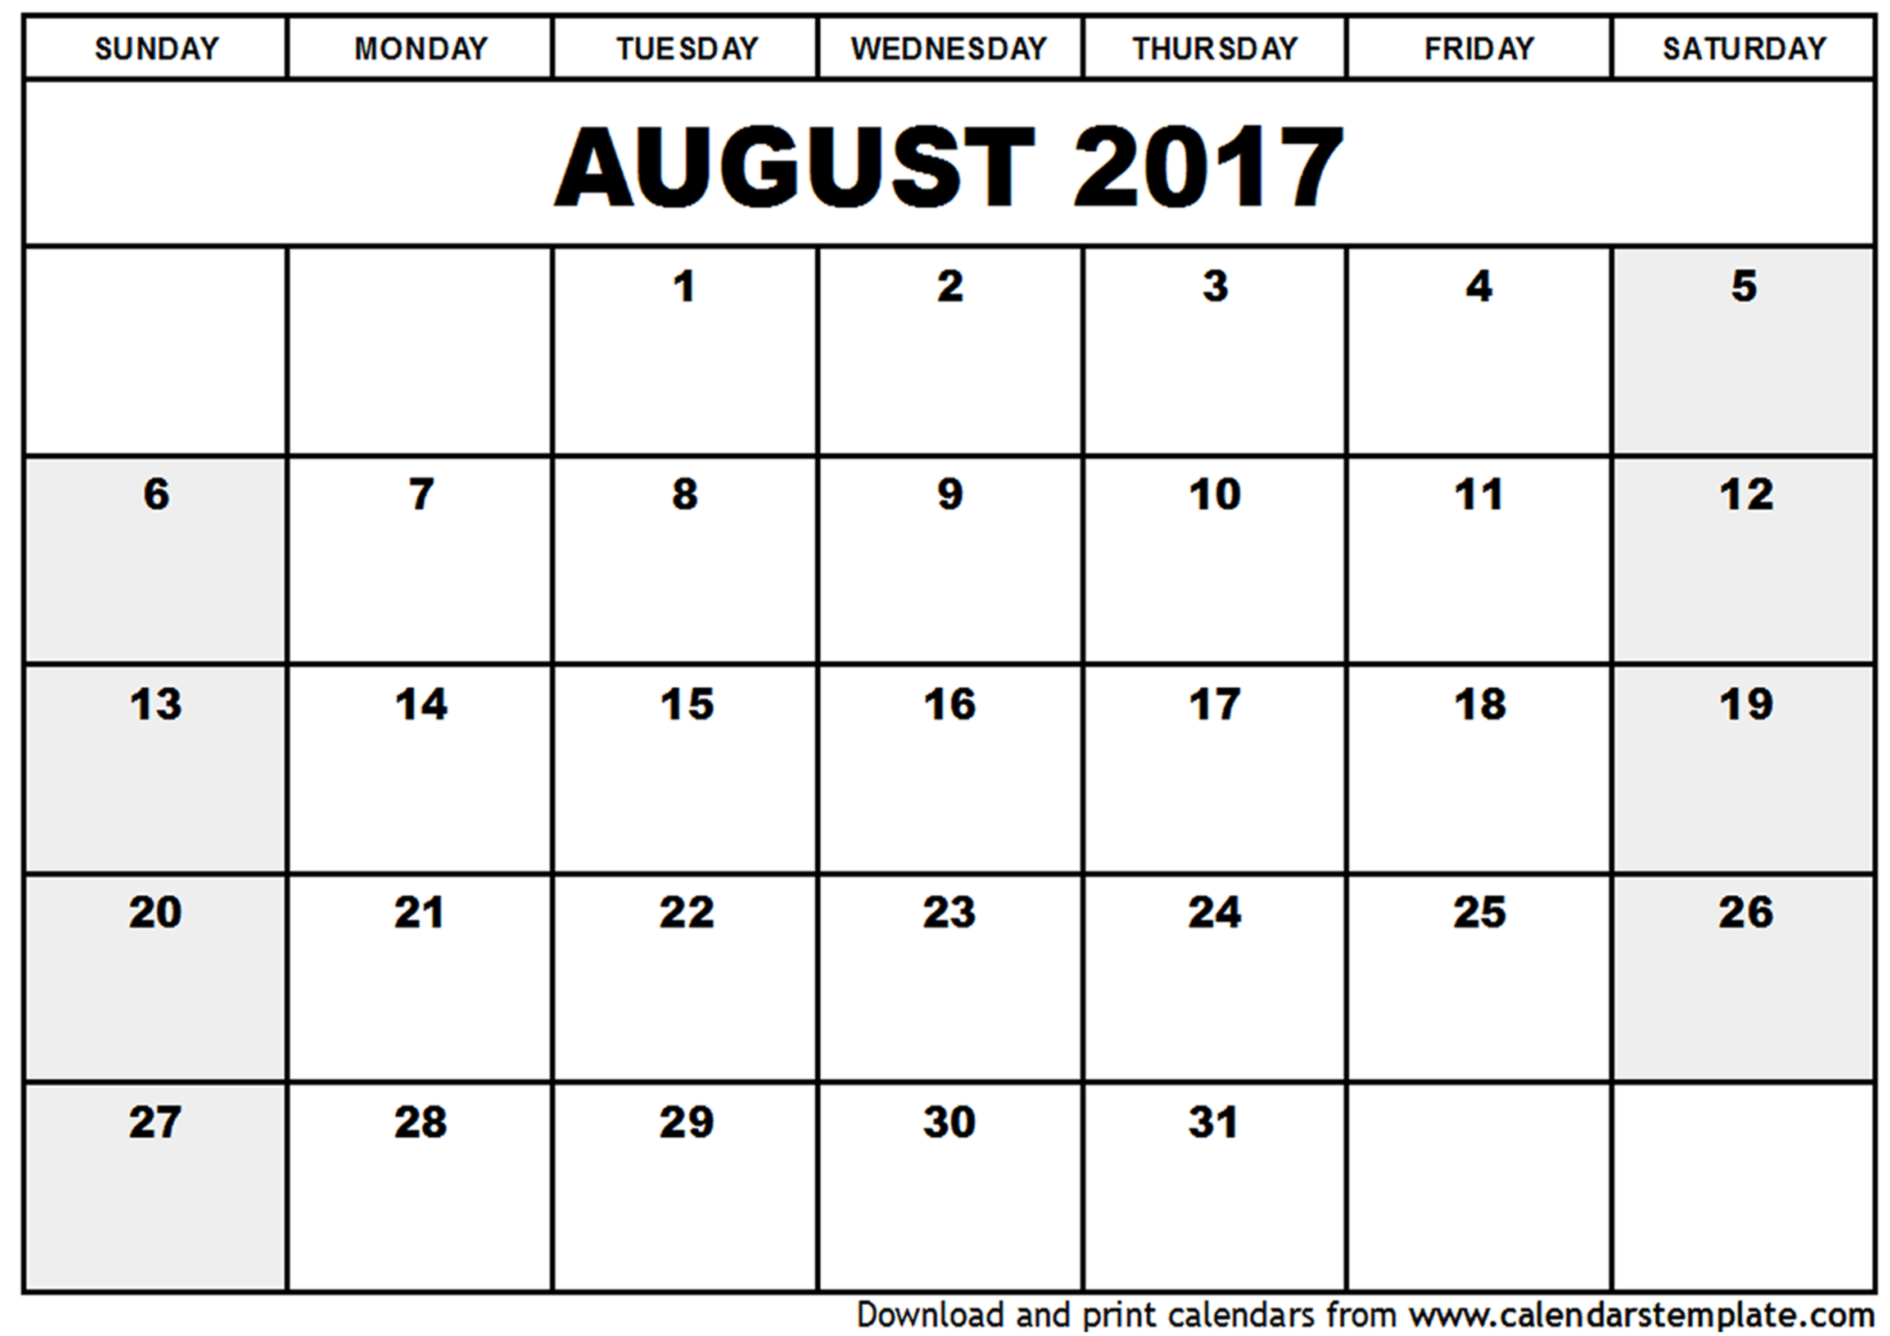 August 2017 Calendar Template | weekly calendar template